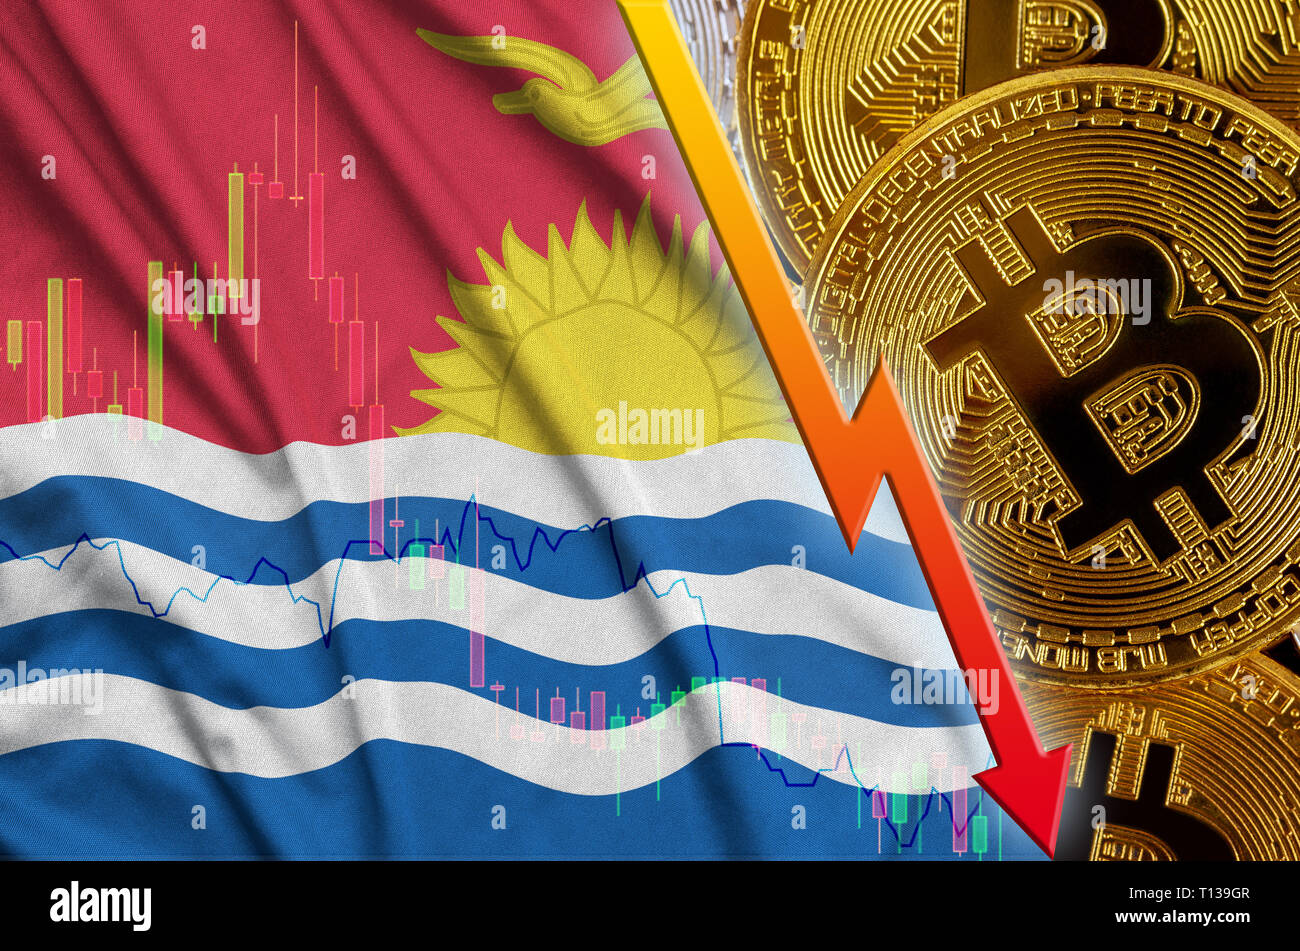 Kiribati Flagge und cryptocurrency rückläufige Trend mit vielen goldenen Bitcoins. Konzept der Reduzierung Bitcoin im Preis oder schlechte Umwandlung in cryptocurrency mi Stockfoto